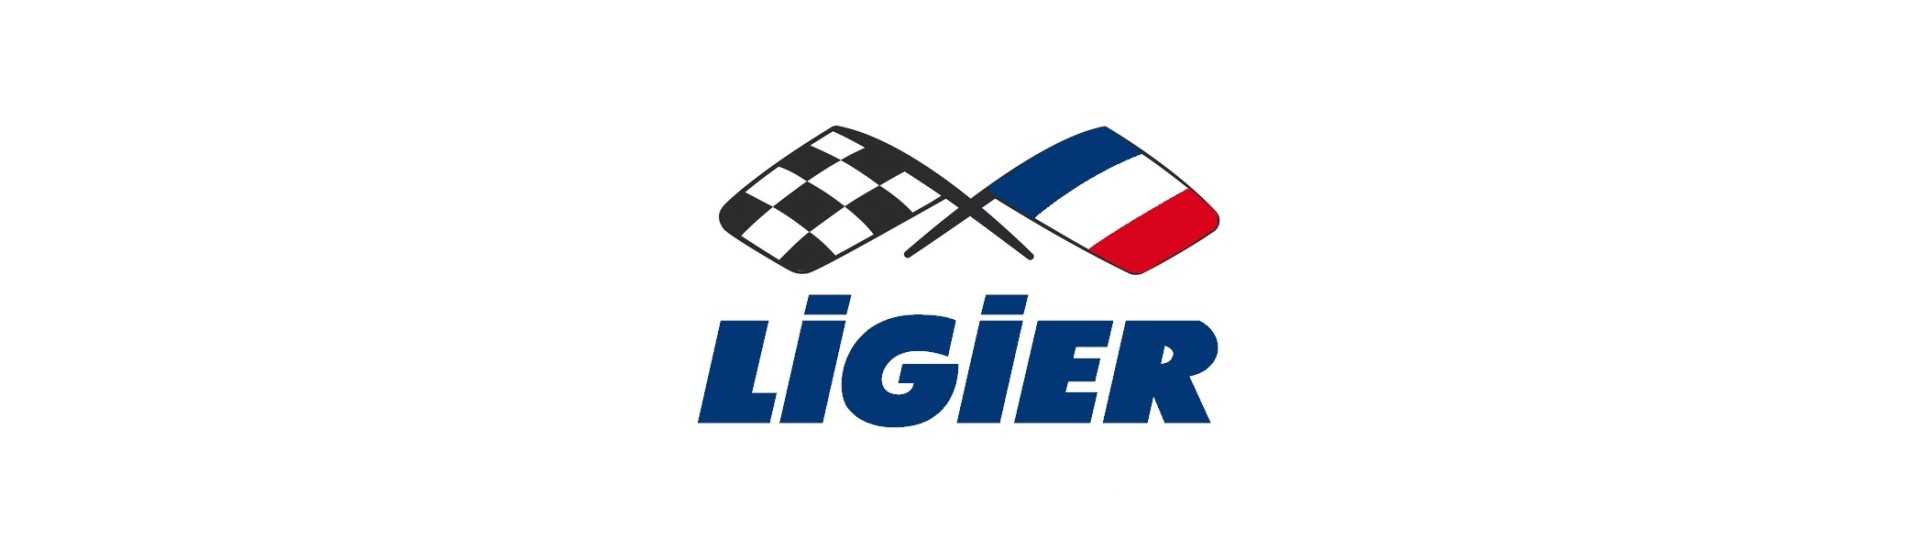 Clignotant au meilleur prix pour voiture sans permis Ligier